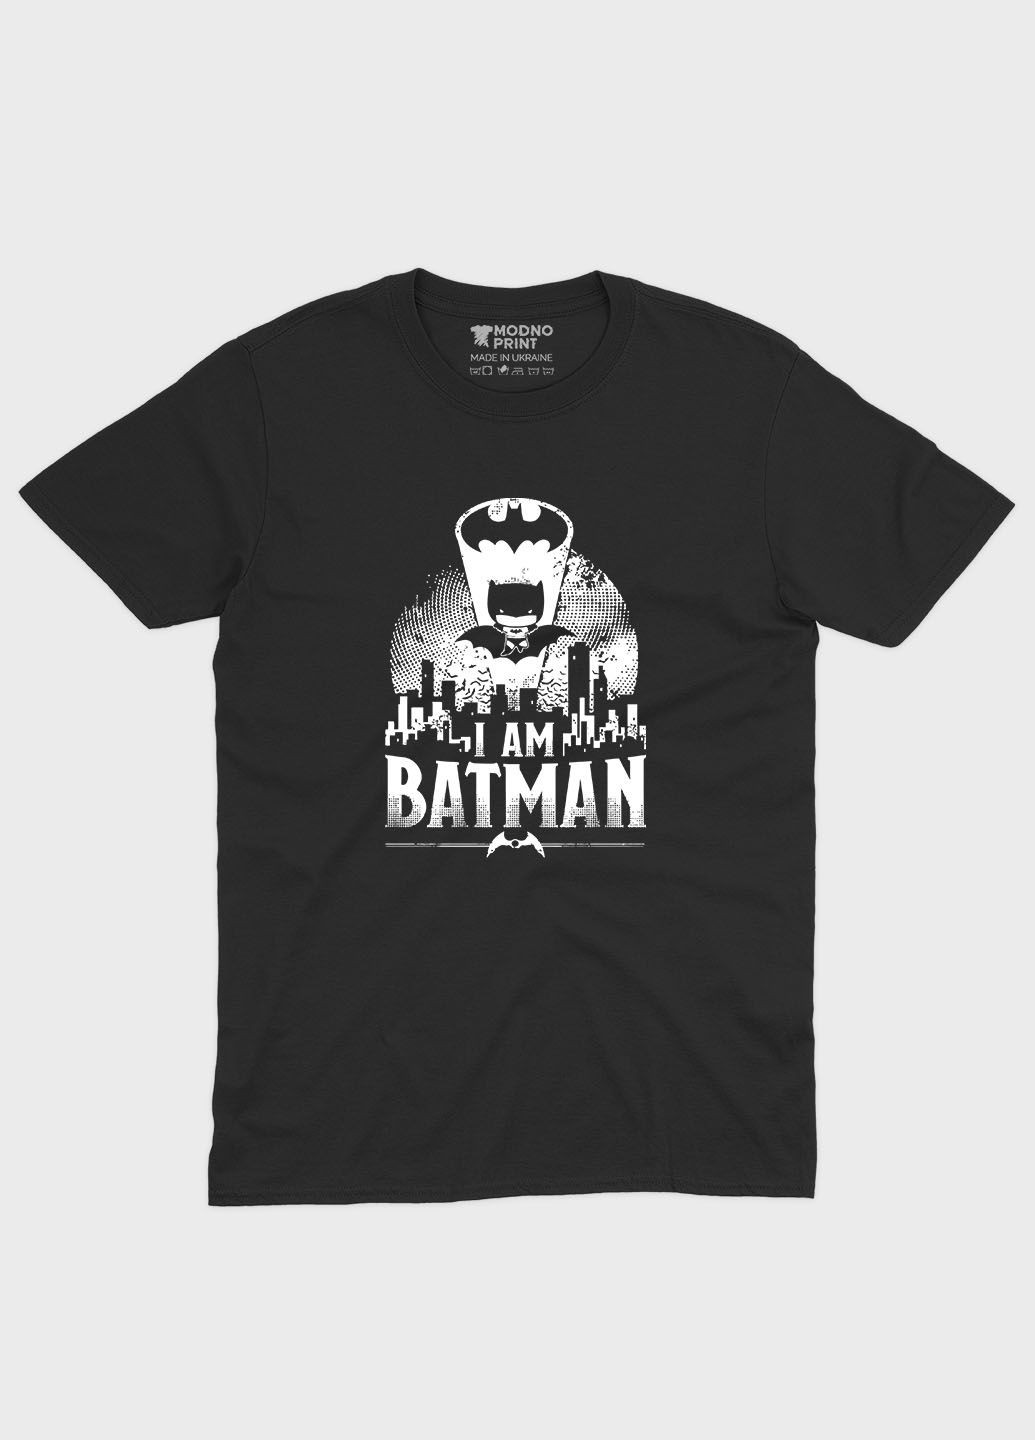 Чорна чоловіча футболка з принтом супергероя - бетмен (ts001-1-bl-006-003-039) Modno